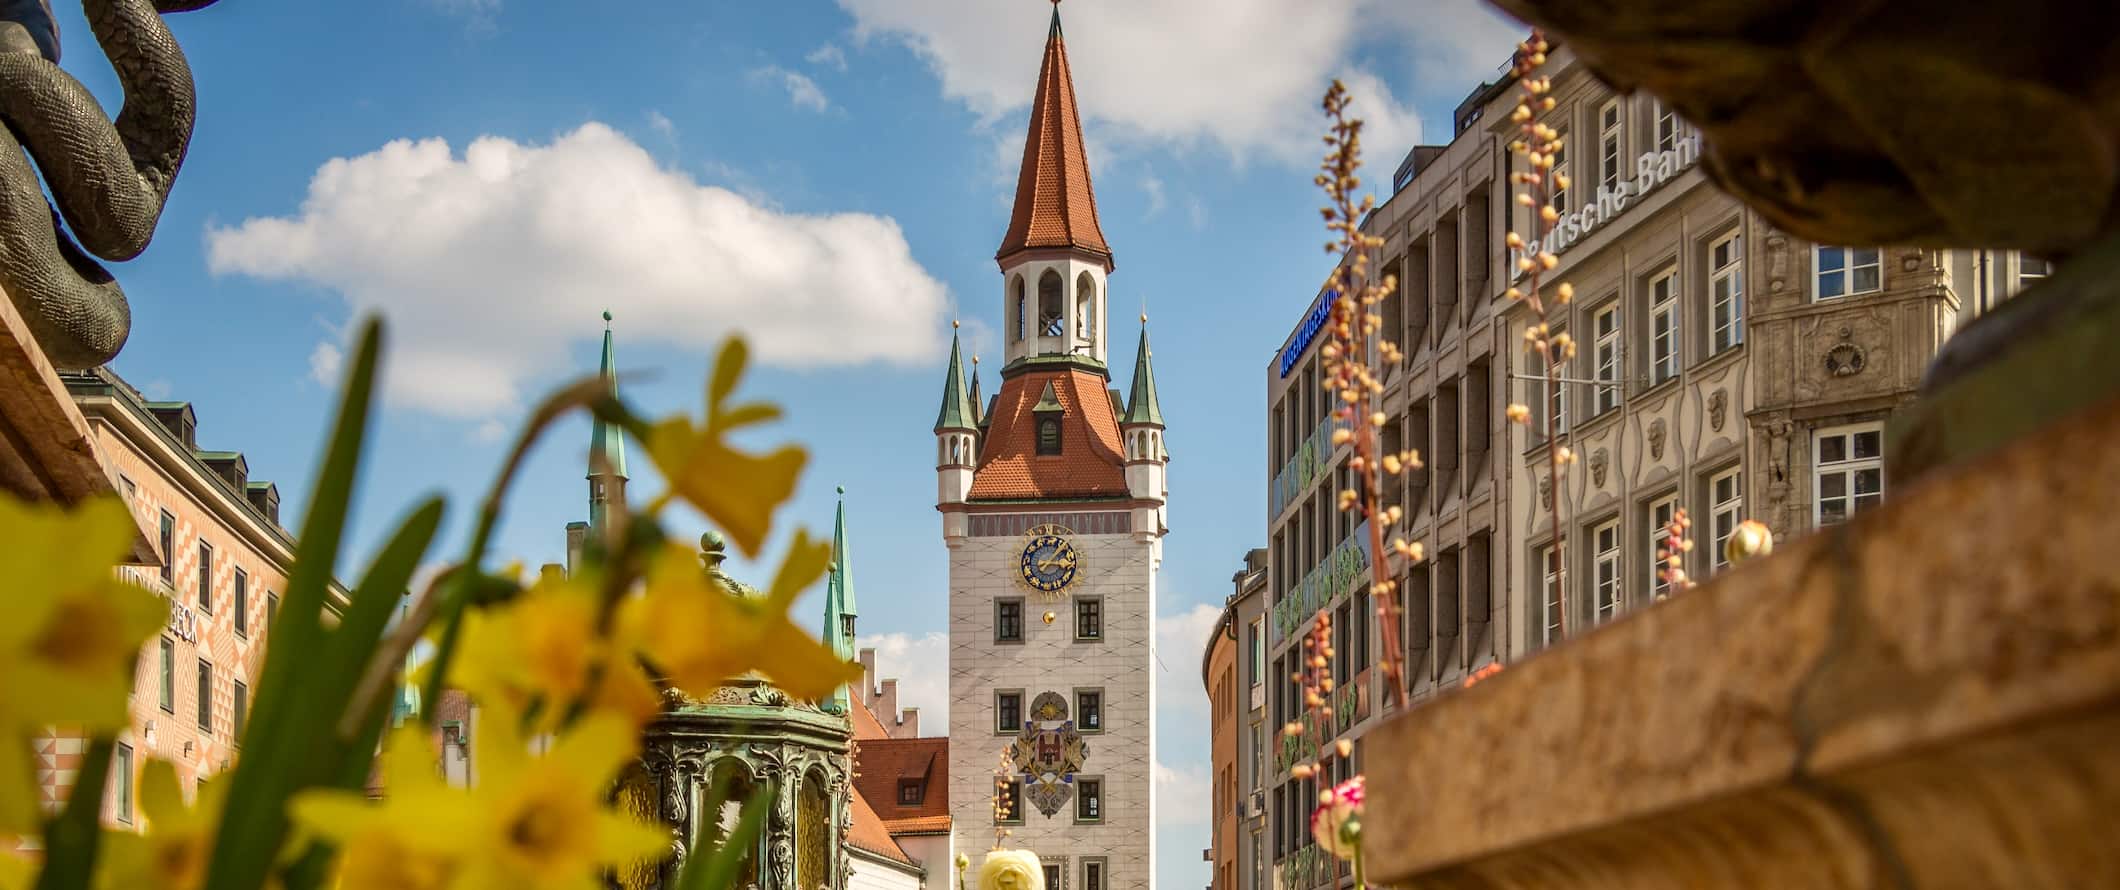 A histórica cidade velha de Munique, Alemanha, na primavera com flores florescentes perto da igreja